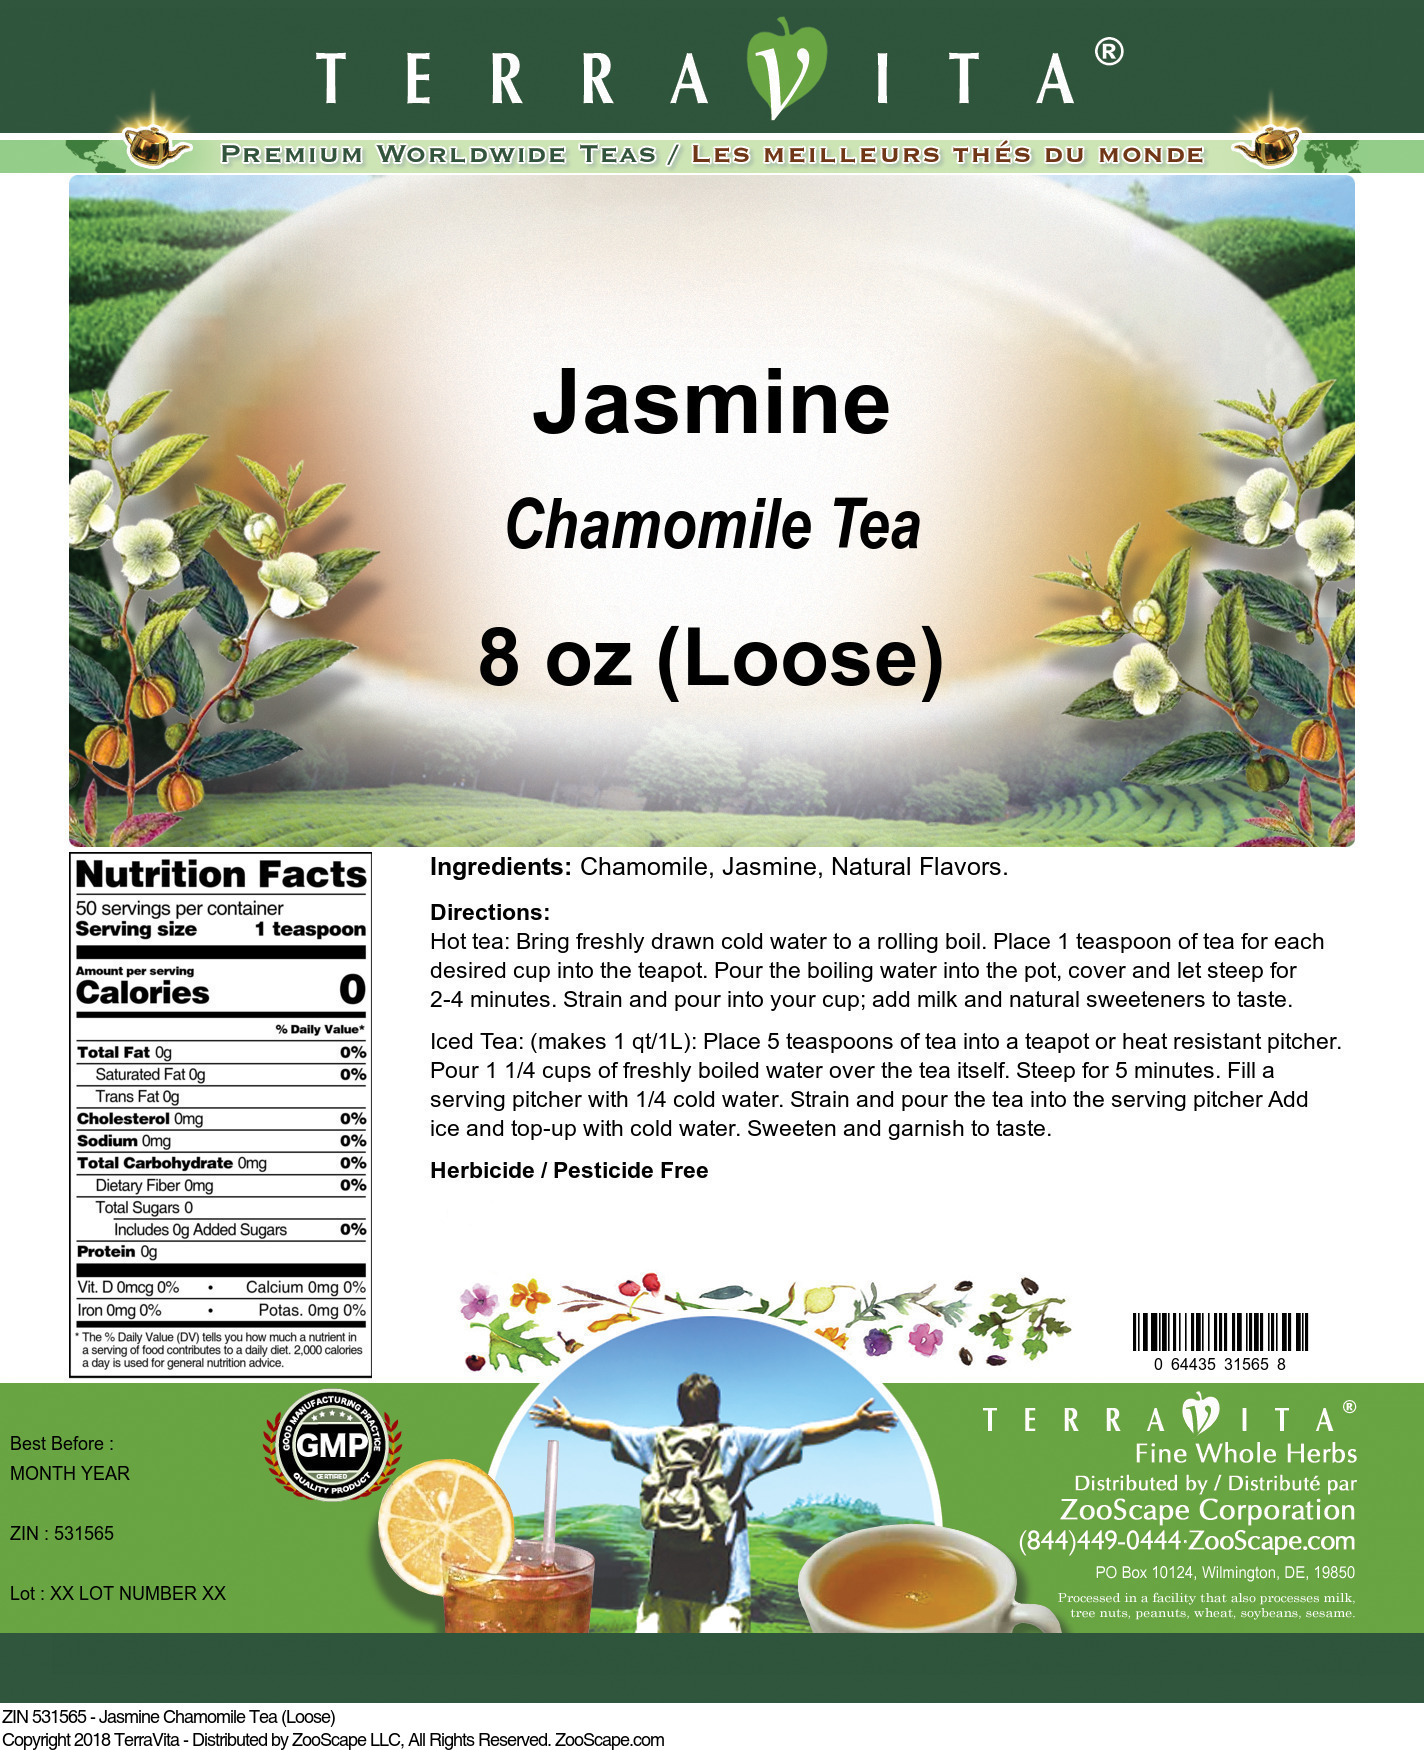 Jasmine Chamomile Tea (Loose) - Label